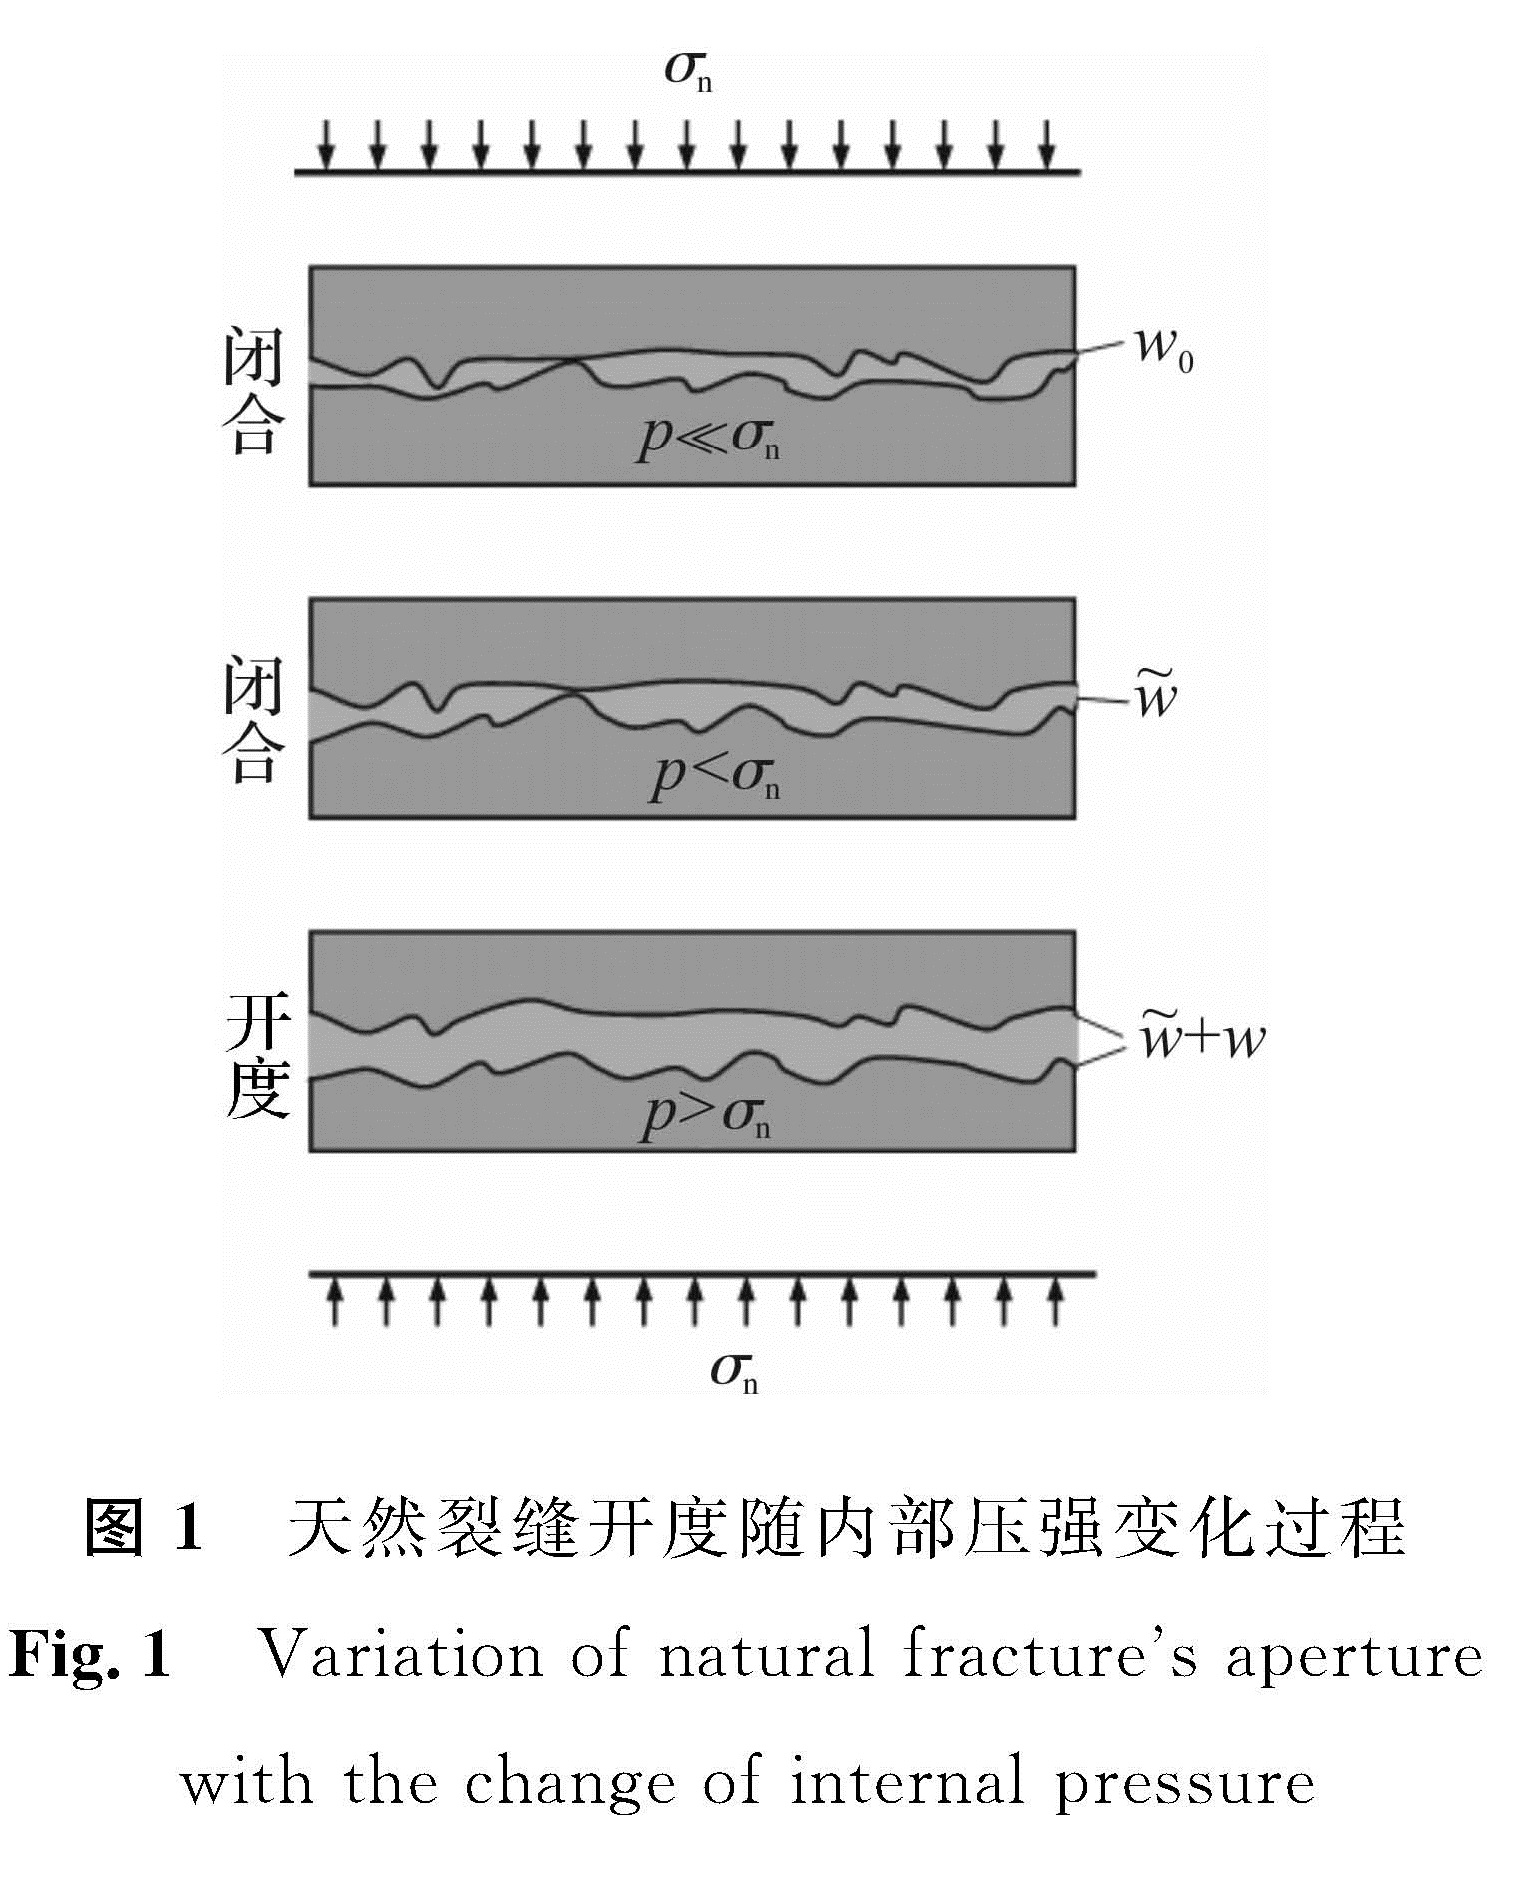 图1 天然裂缝开度随内部压强变化过程<br/>Fig.1 Variation of natural fracture's aperture with the change of internal pressure